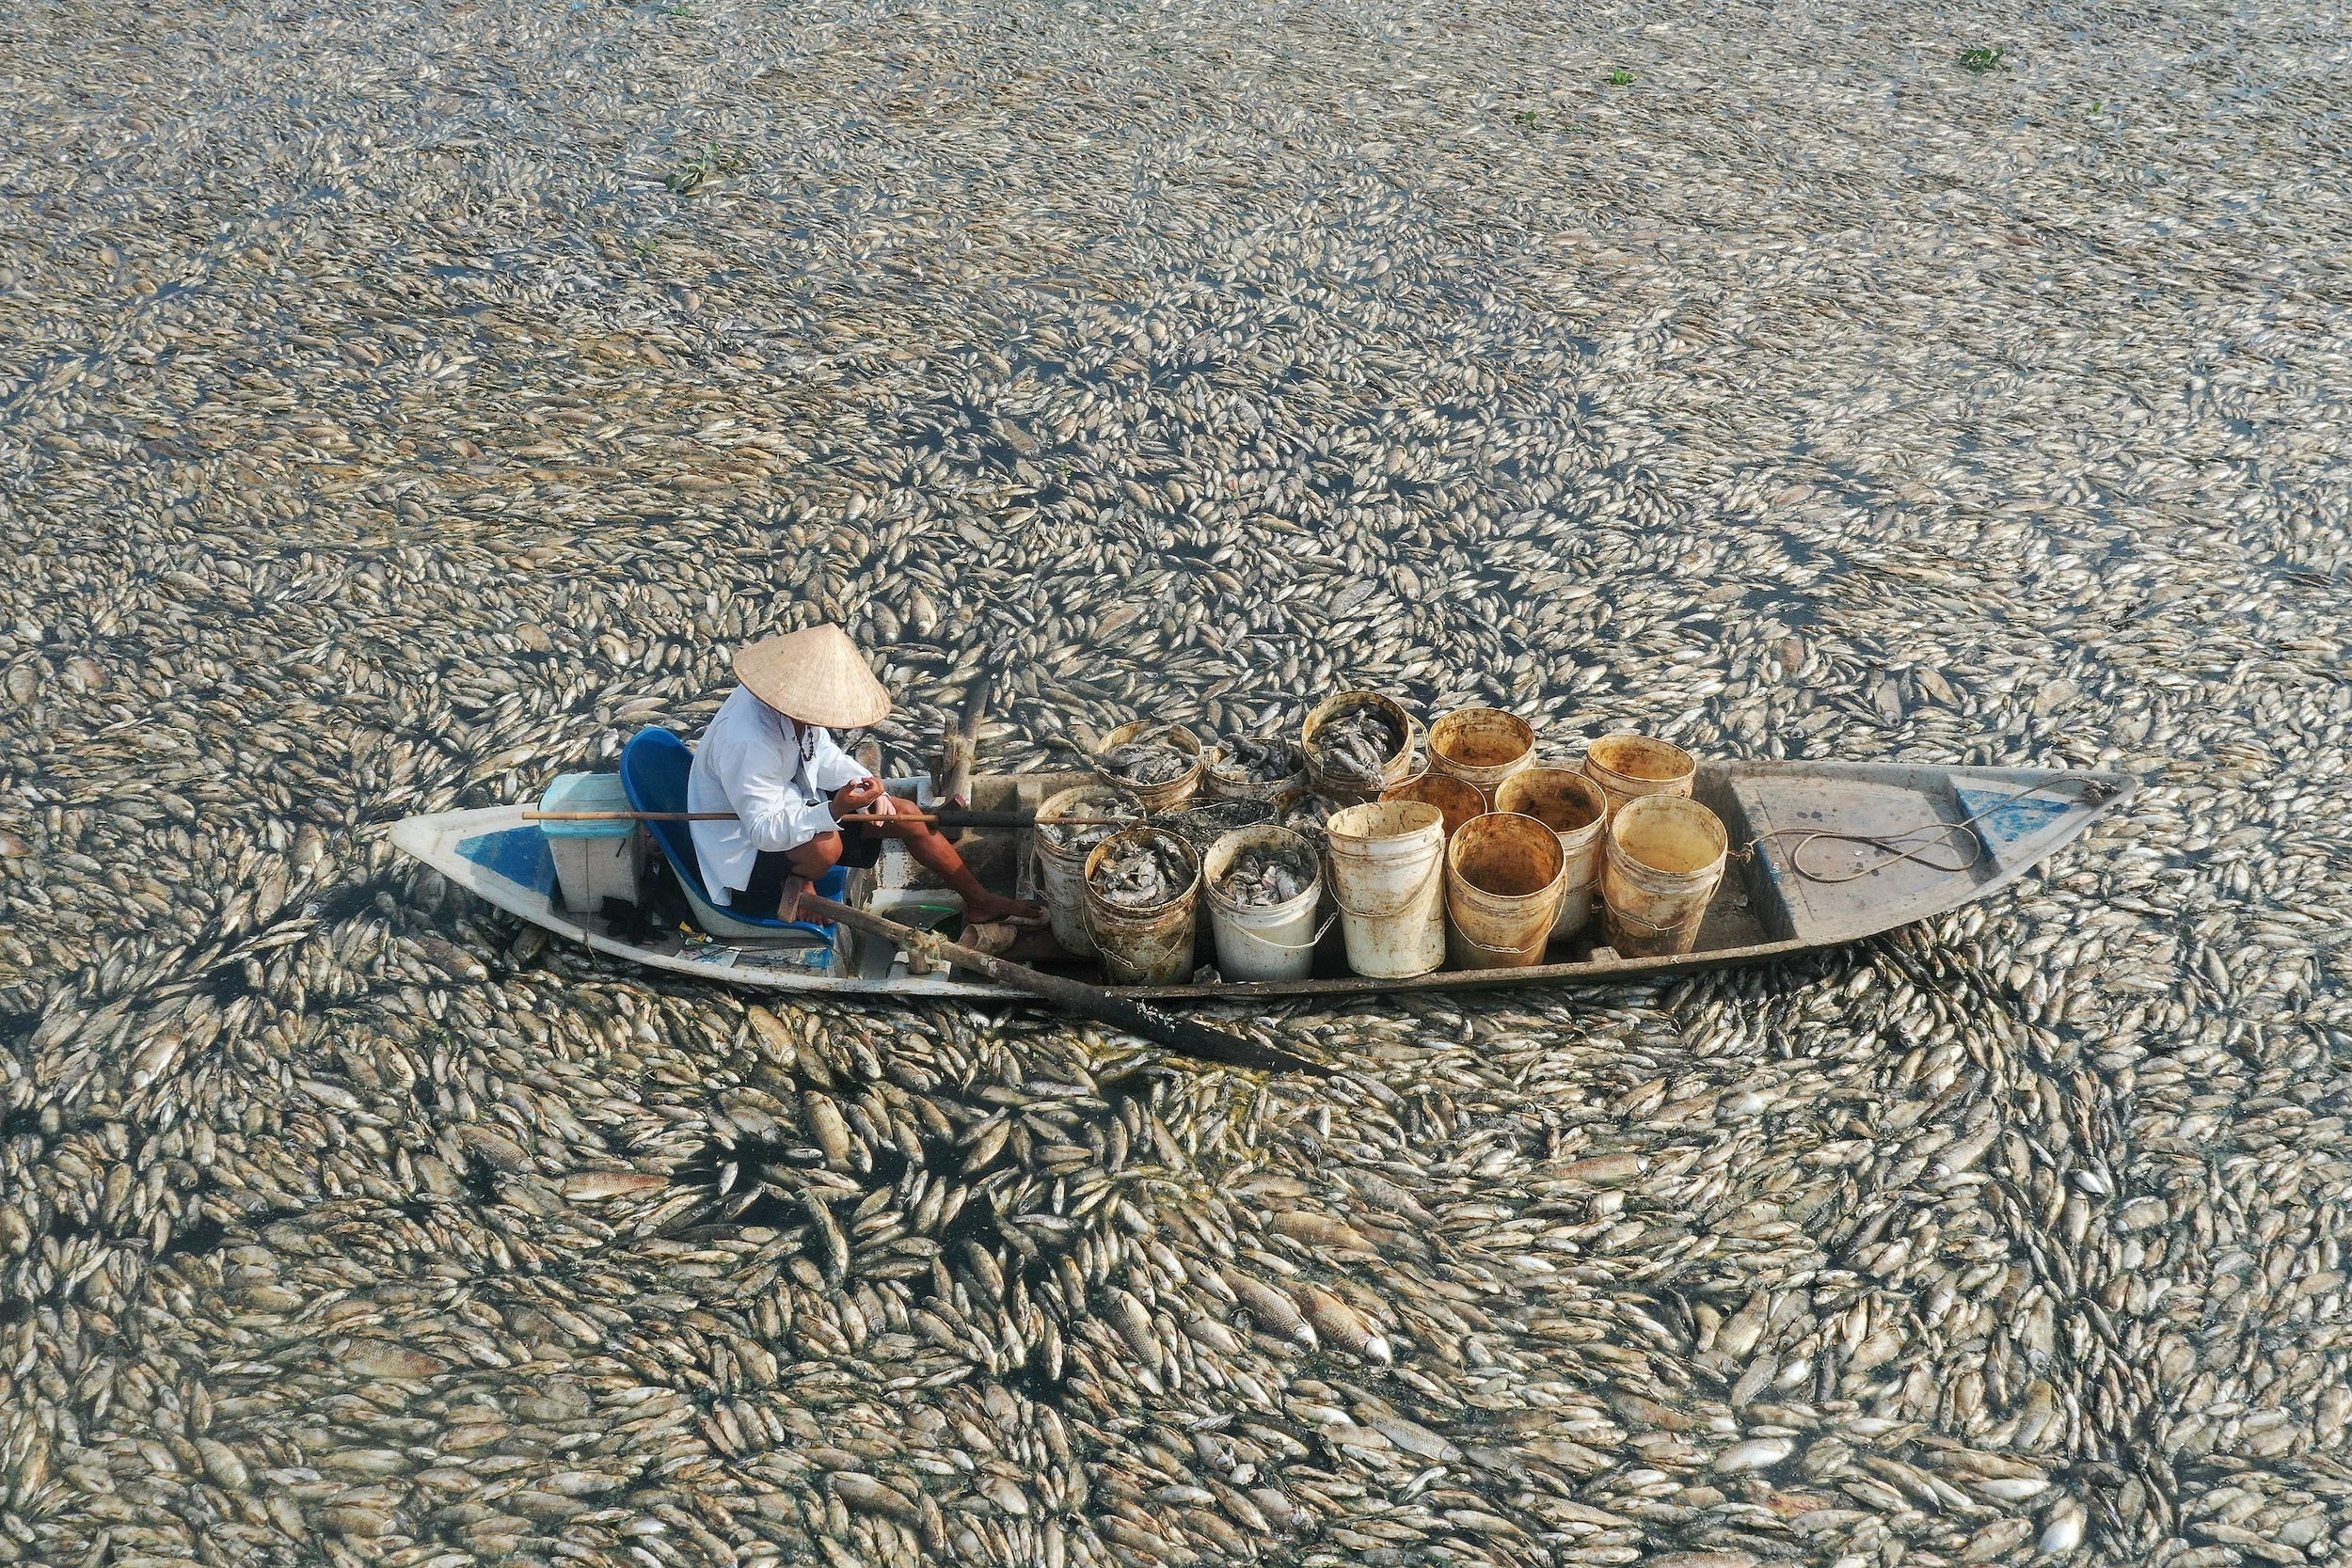 hunderttausende fische sterben in vietnam: warum deshalb jetzt die kaffeepreise steigen könnten